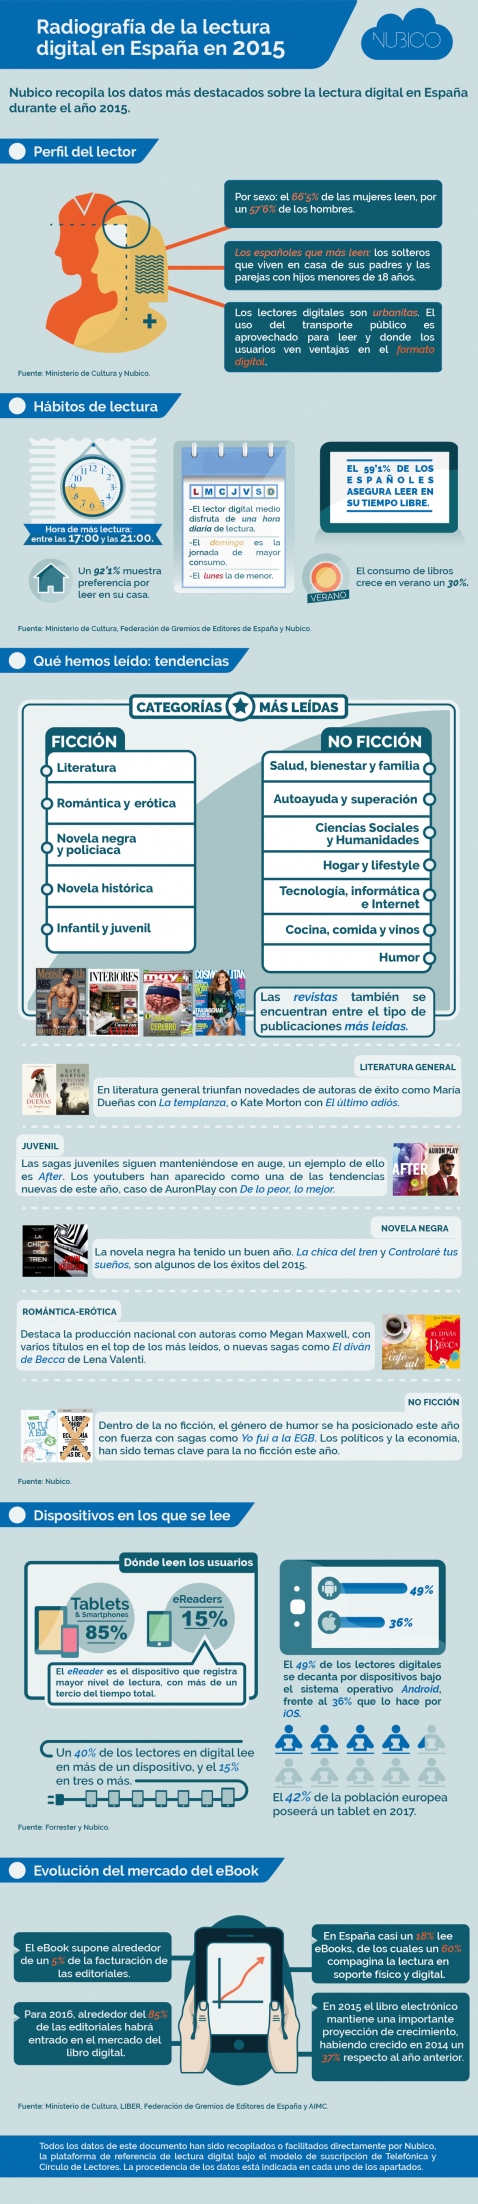 (alta)Radiografía-de-la-lectura-digital-en-España-en-2015